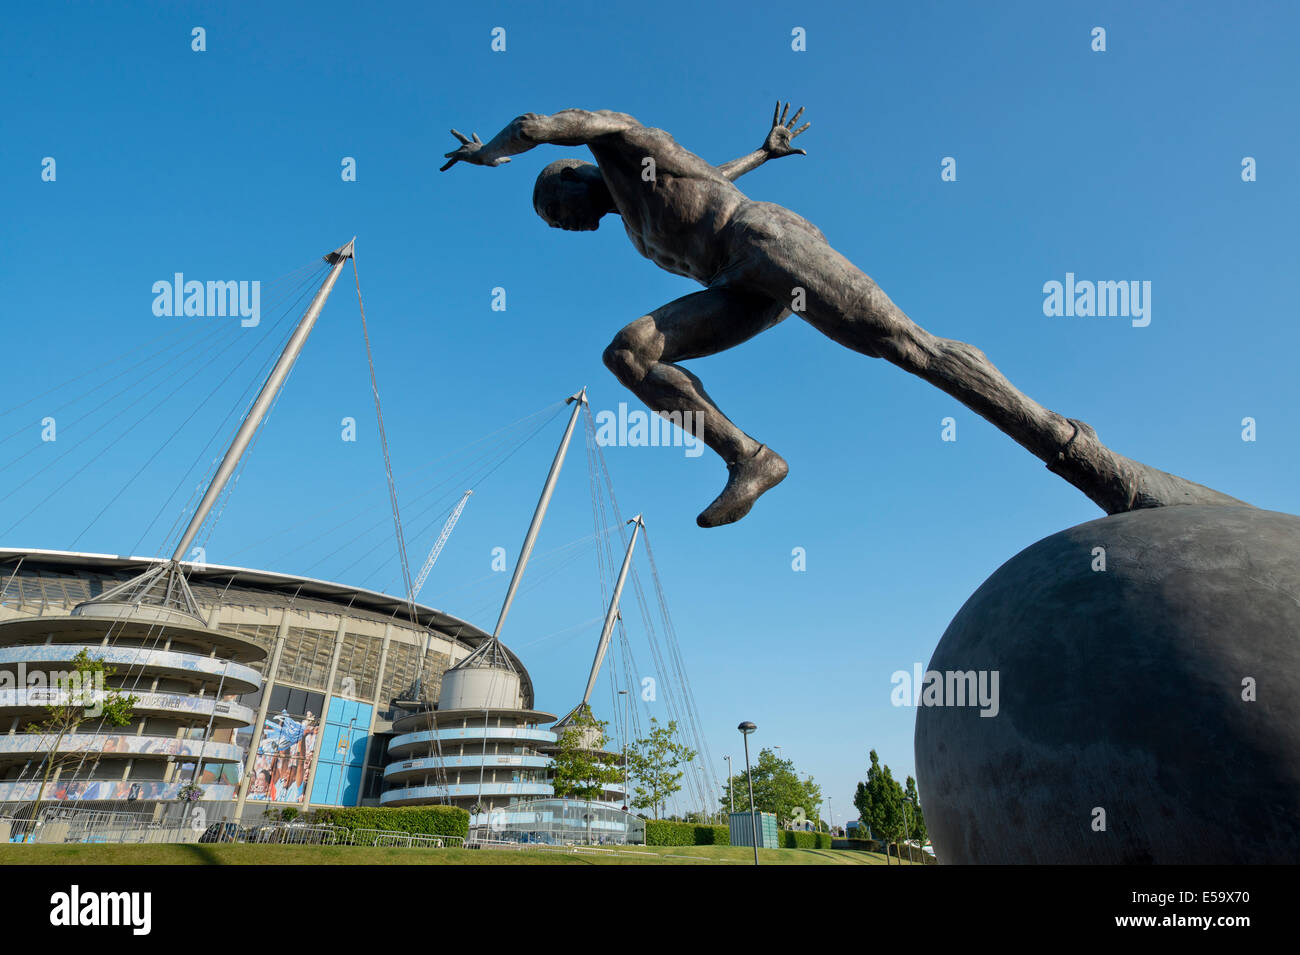 La statue d'un sprinter le moment après le coup de départ à proximité de la ville de Manchester Etihad Stadium (usage éditorial uniquement). Banque D'Images